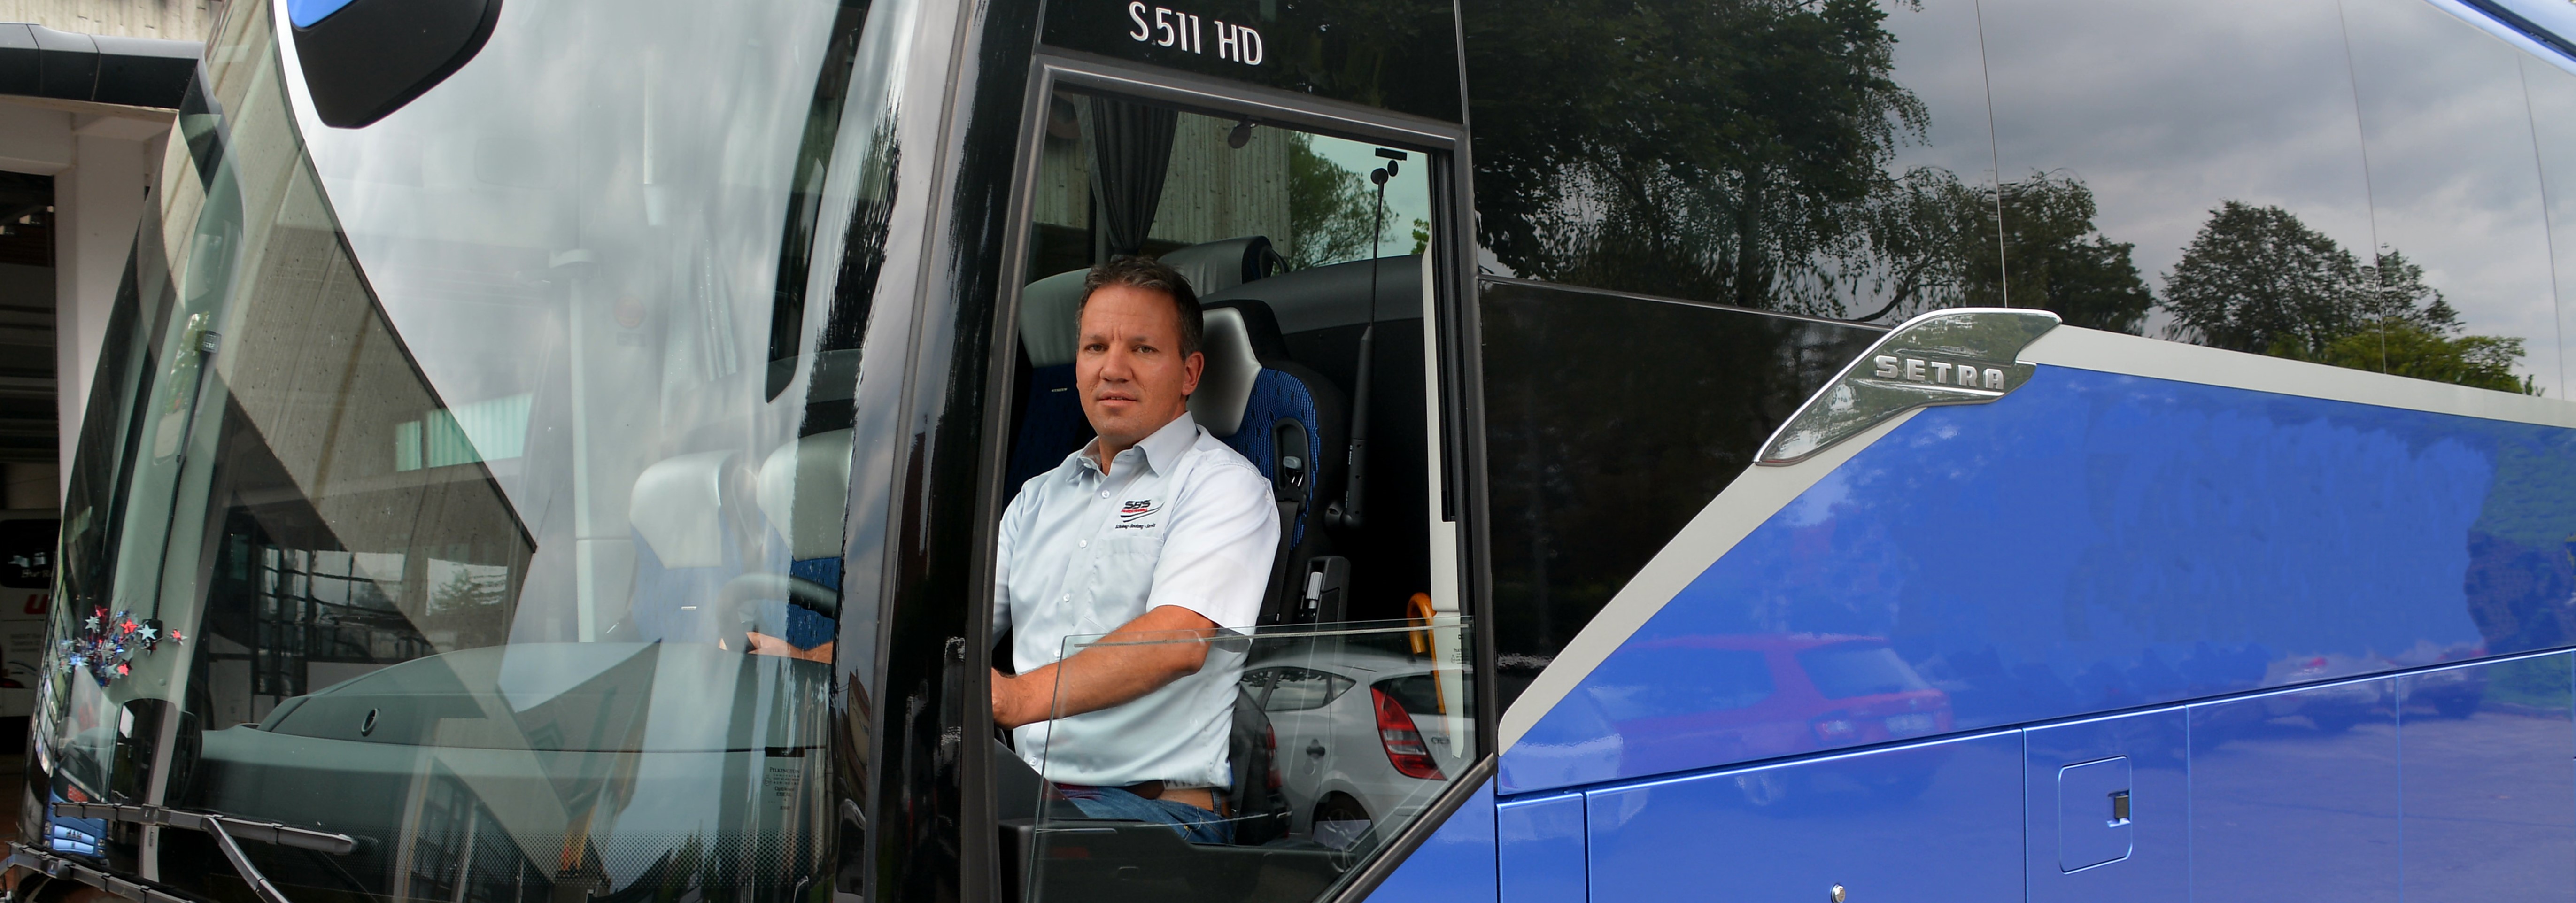 Neue Lenk- und Ruhezeiten für Busfahrer im Gelegenheitsverkehr